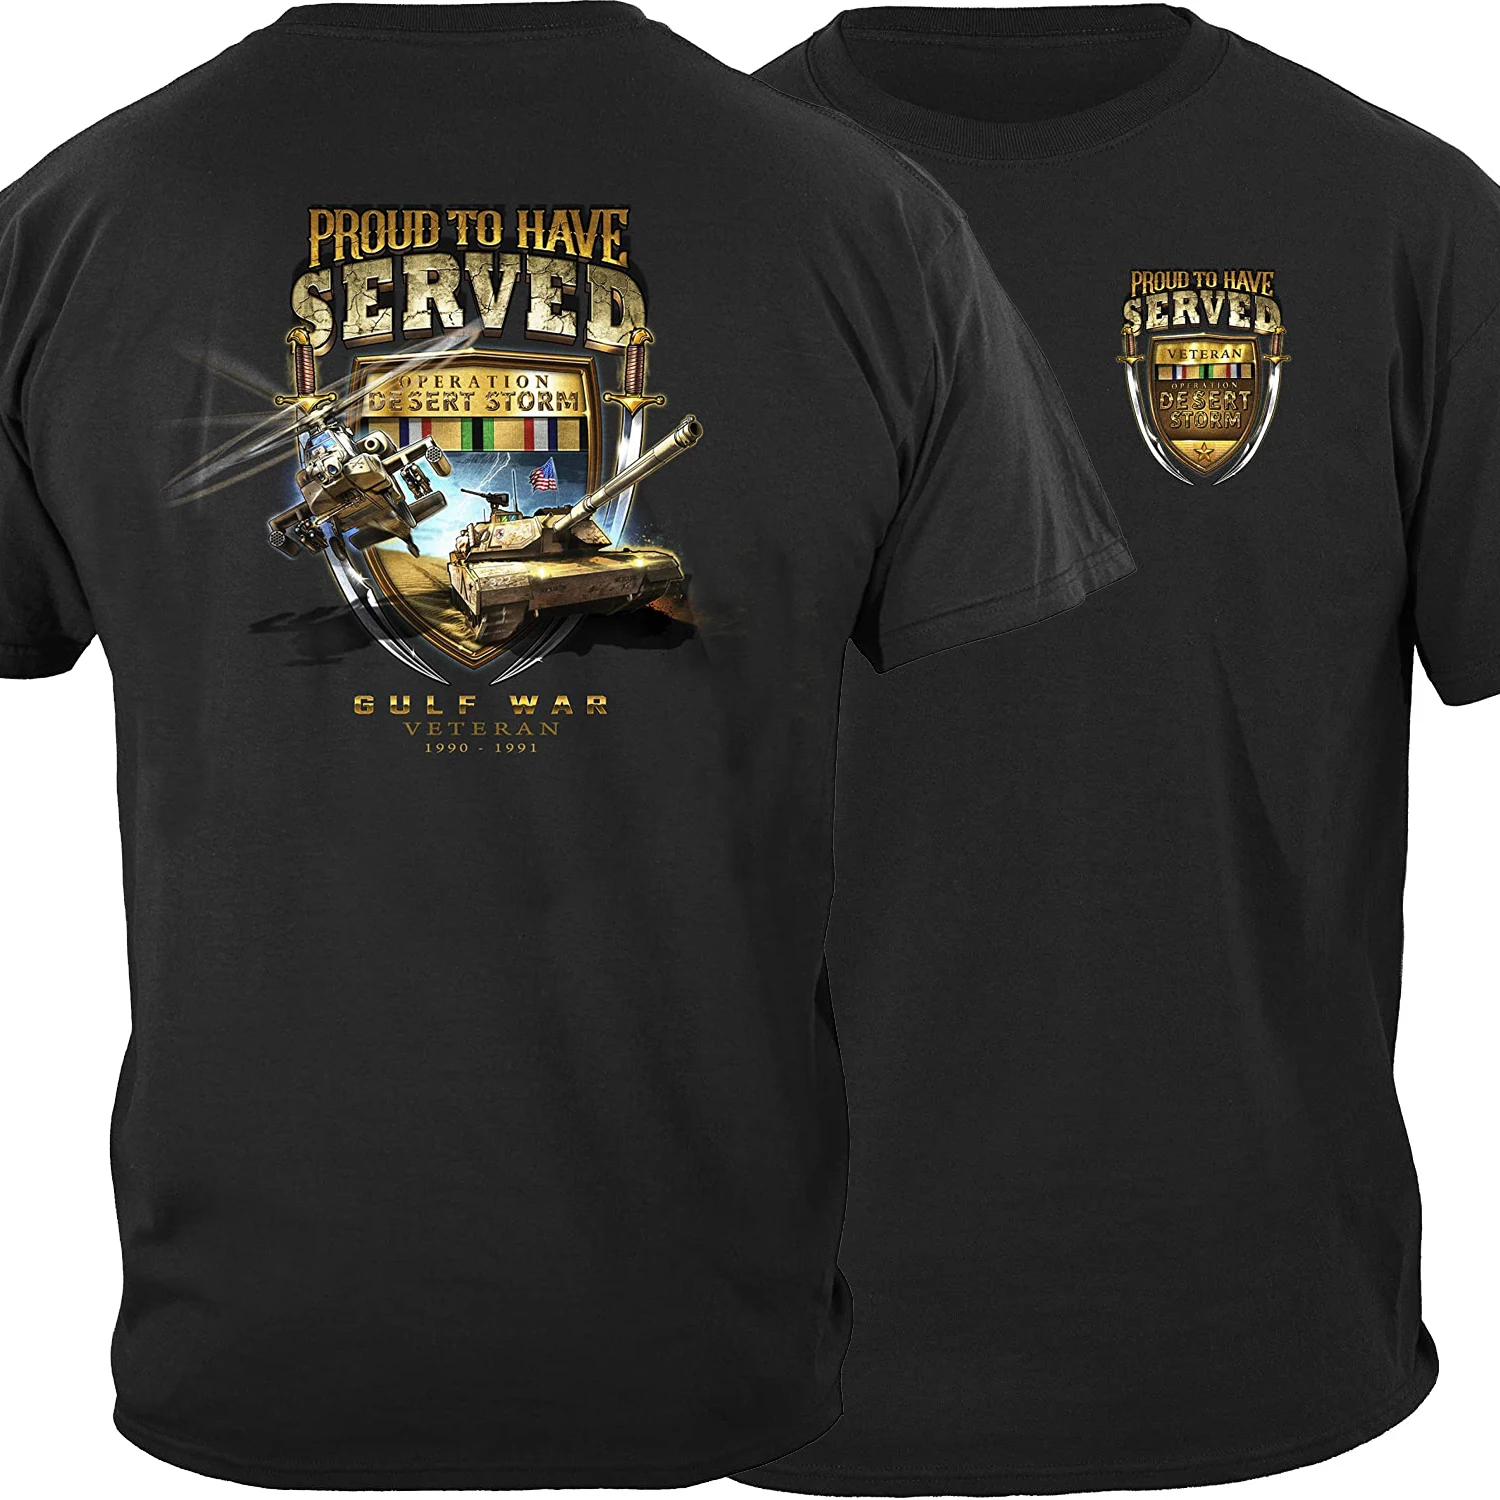 

Operation Desert Storm Gulf War Veteran T Shirt. Short Sleeve 100% Cotton Casual T-shirts Loose Top Size S-3XL